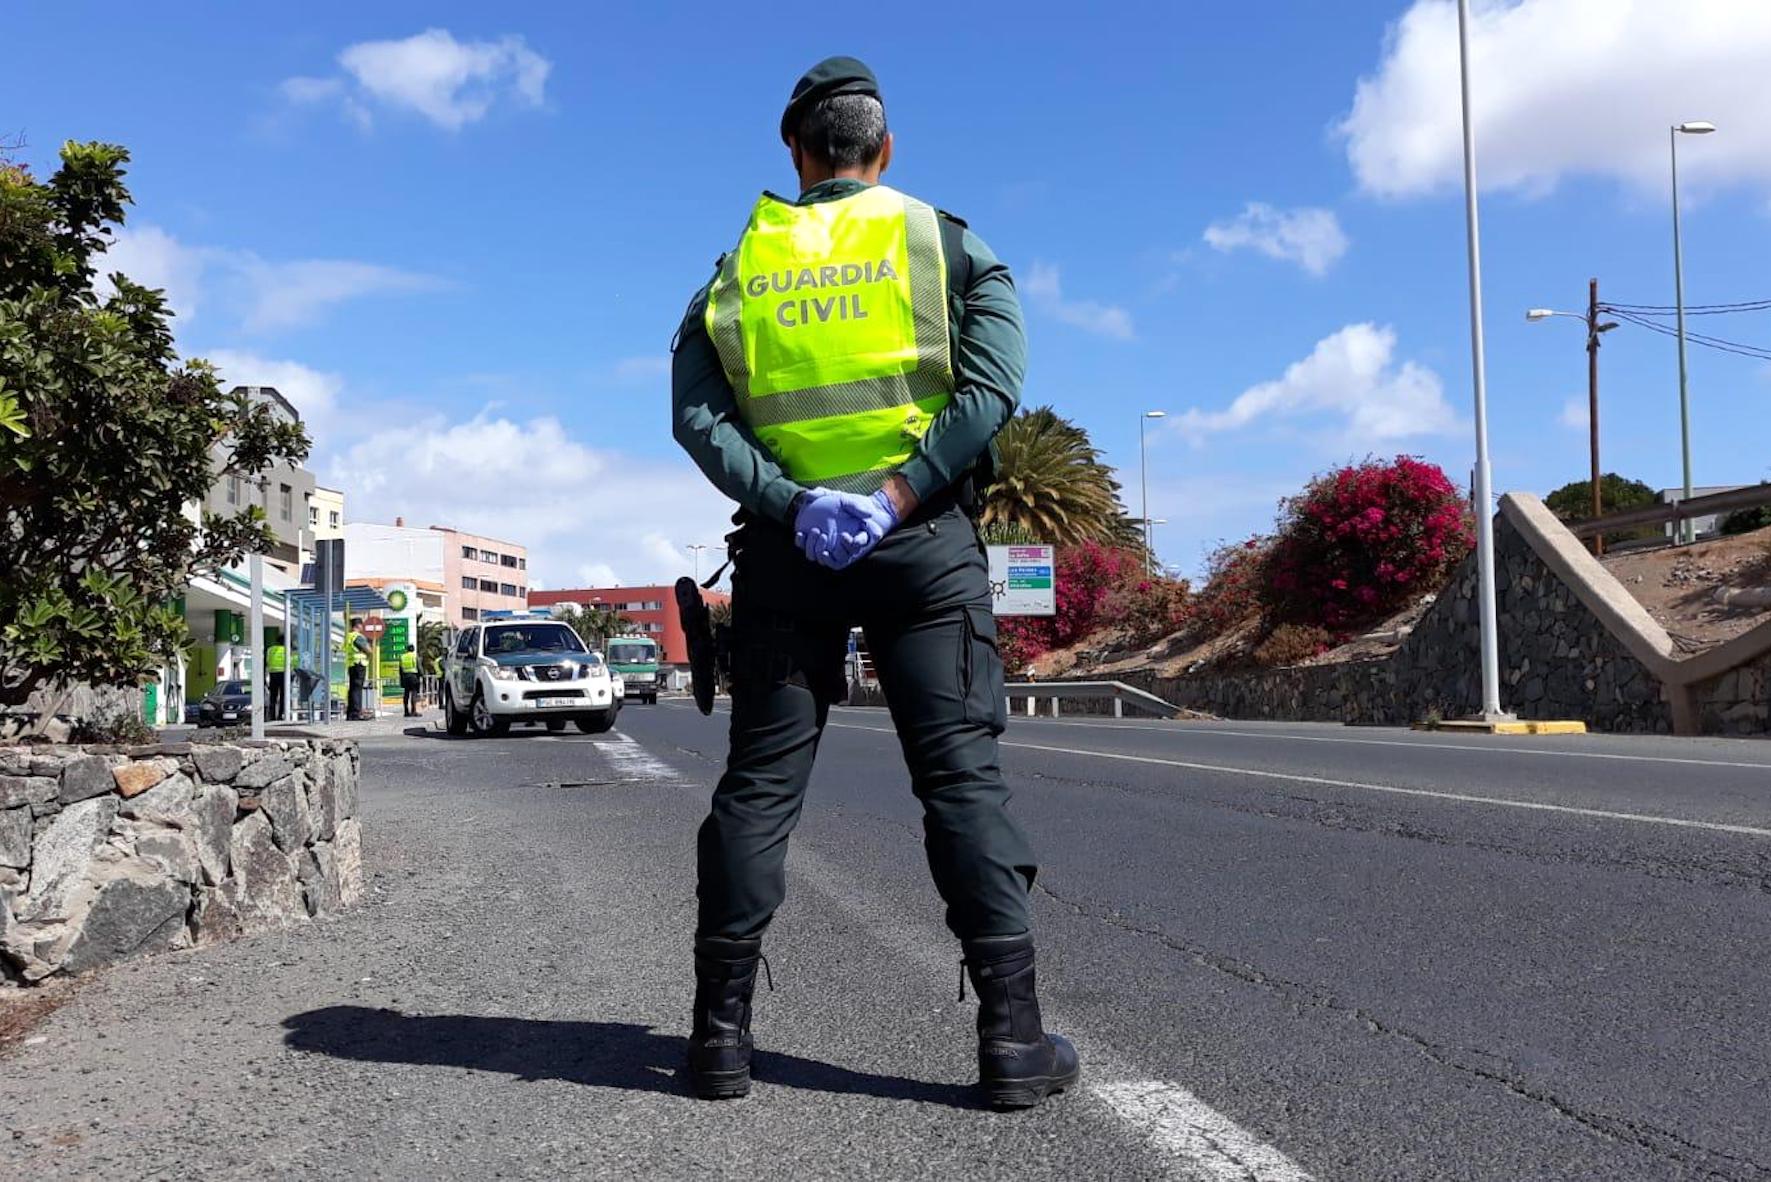 La Guardia Civil investiga posibles delitos denunciados en las últimas horas en redes sociales en El Hierro